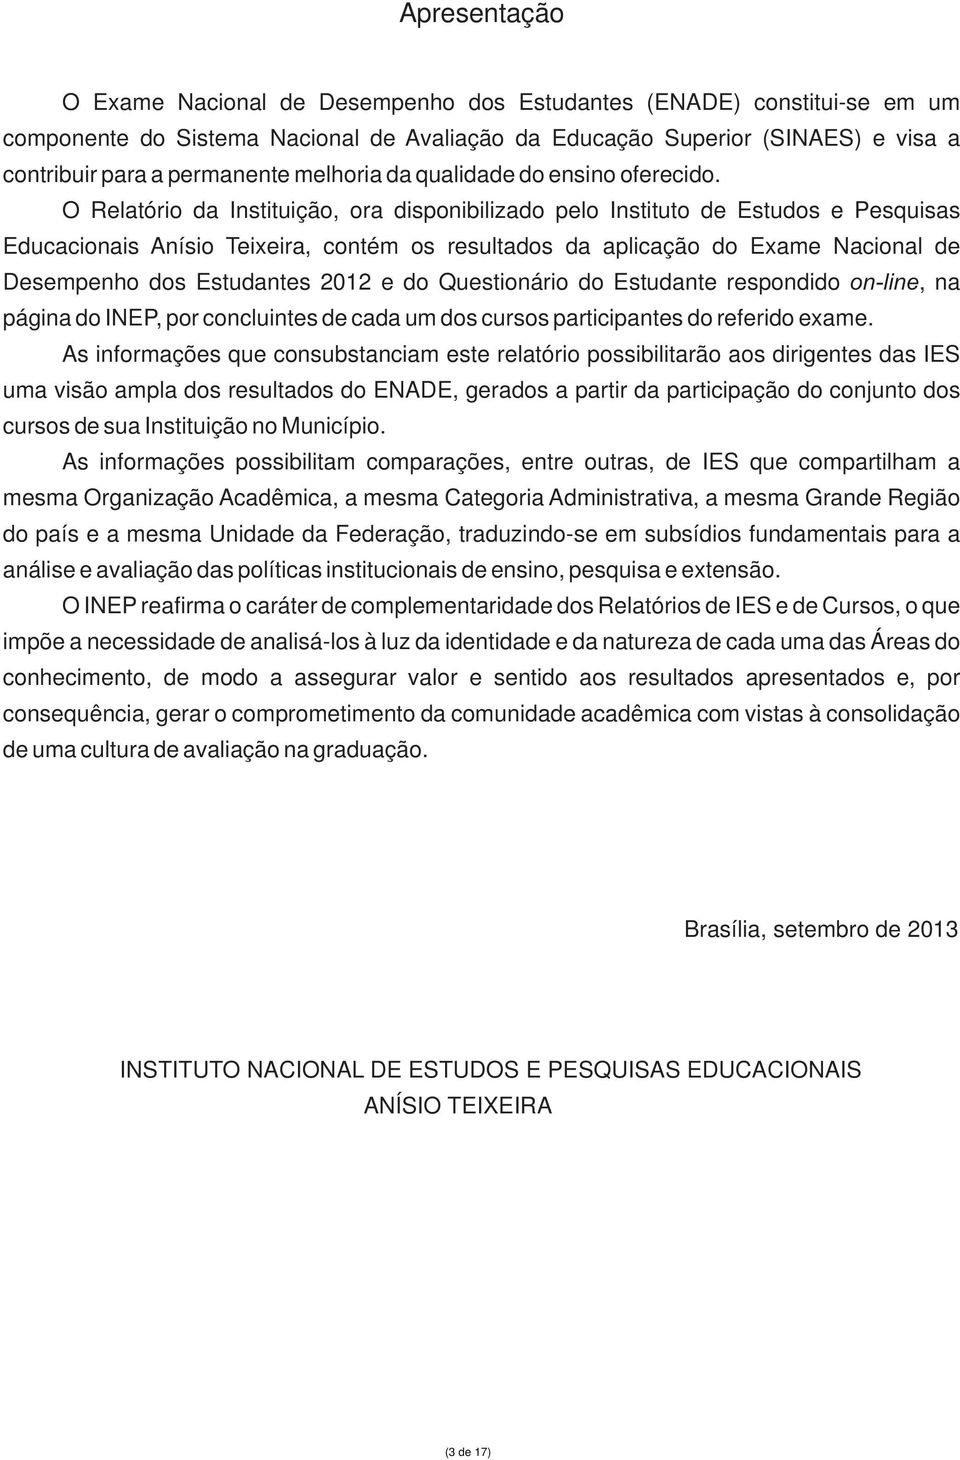 O Relatório da Instituição, ora disponibilizado pelo Instituto de Estudos e Pesquisas Educacionais Anísio Teixeira, contém os resultados da aplicação do Exame Nacional de Desempenho dos Estudantes